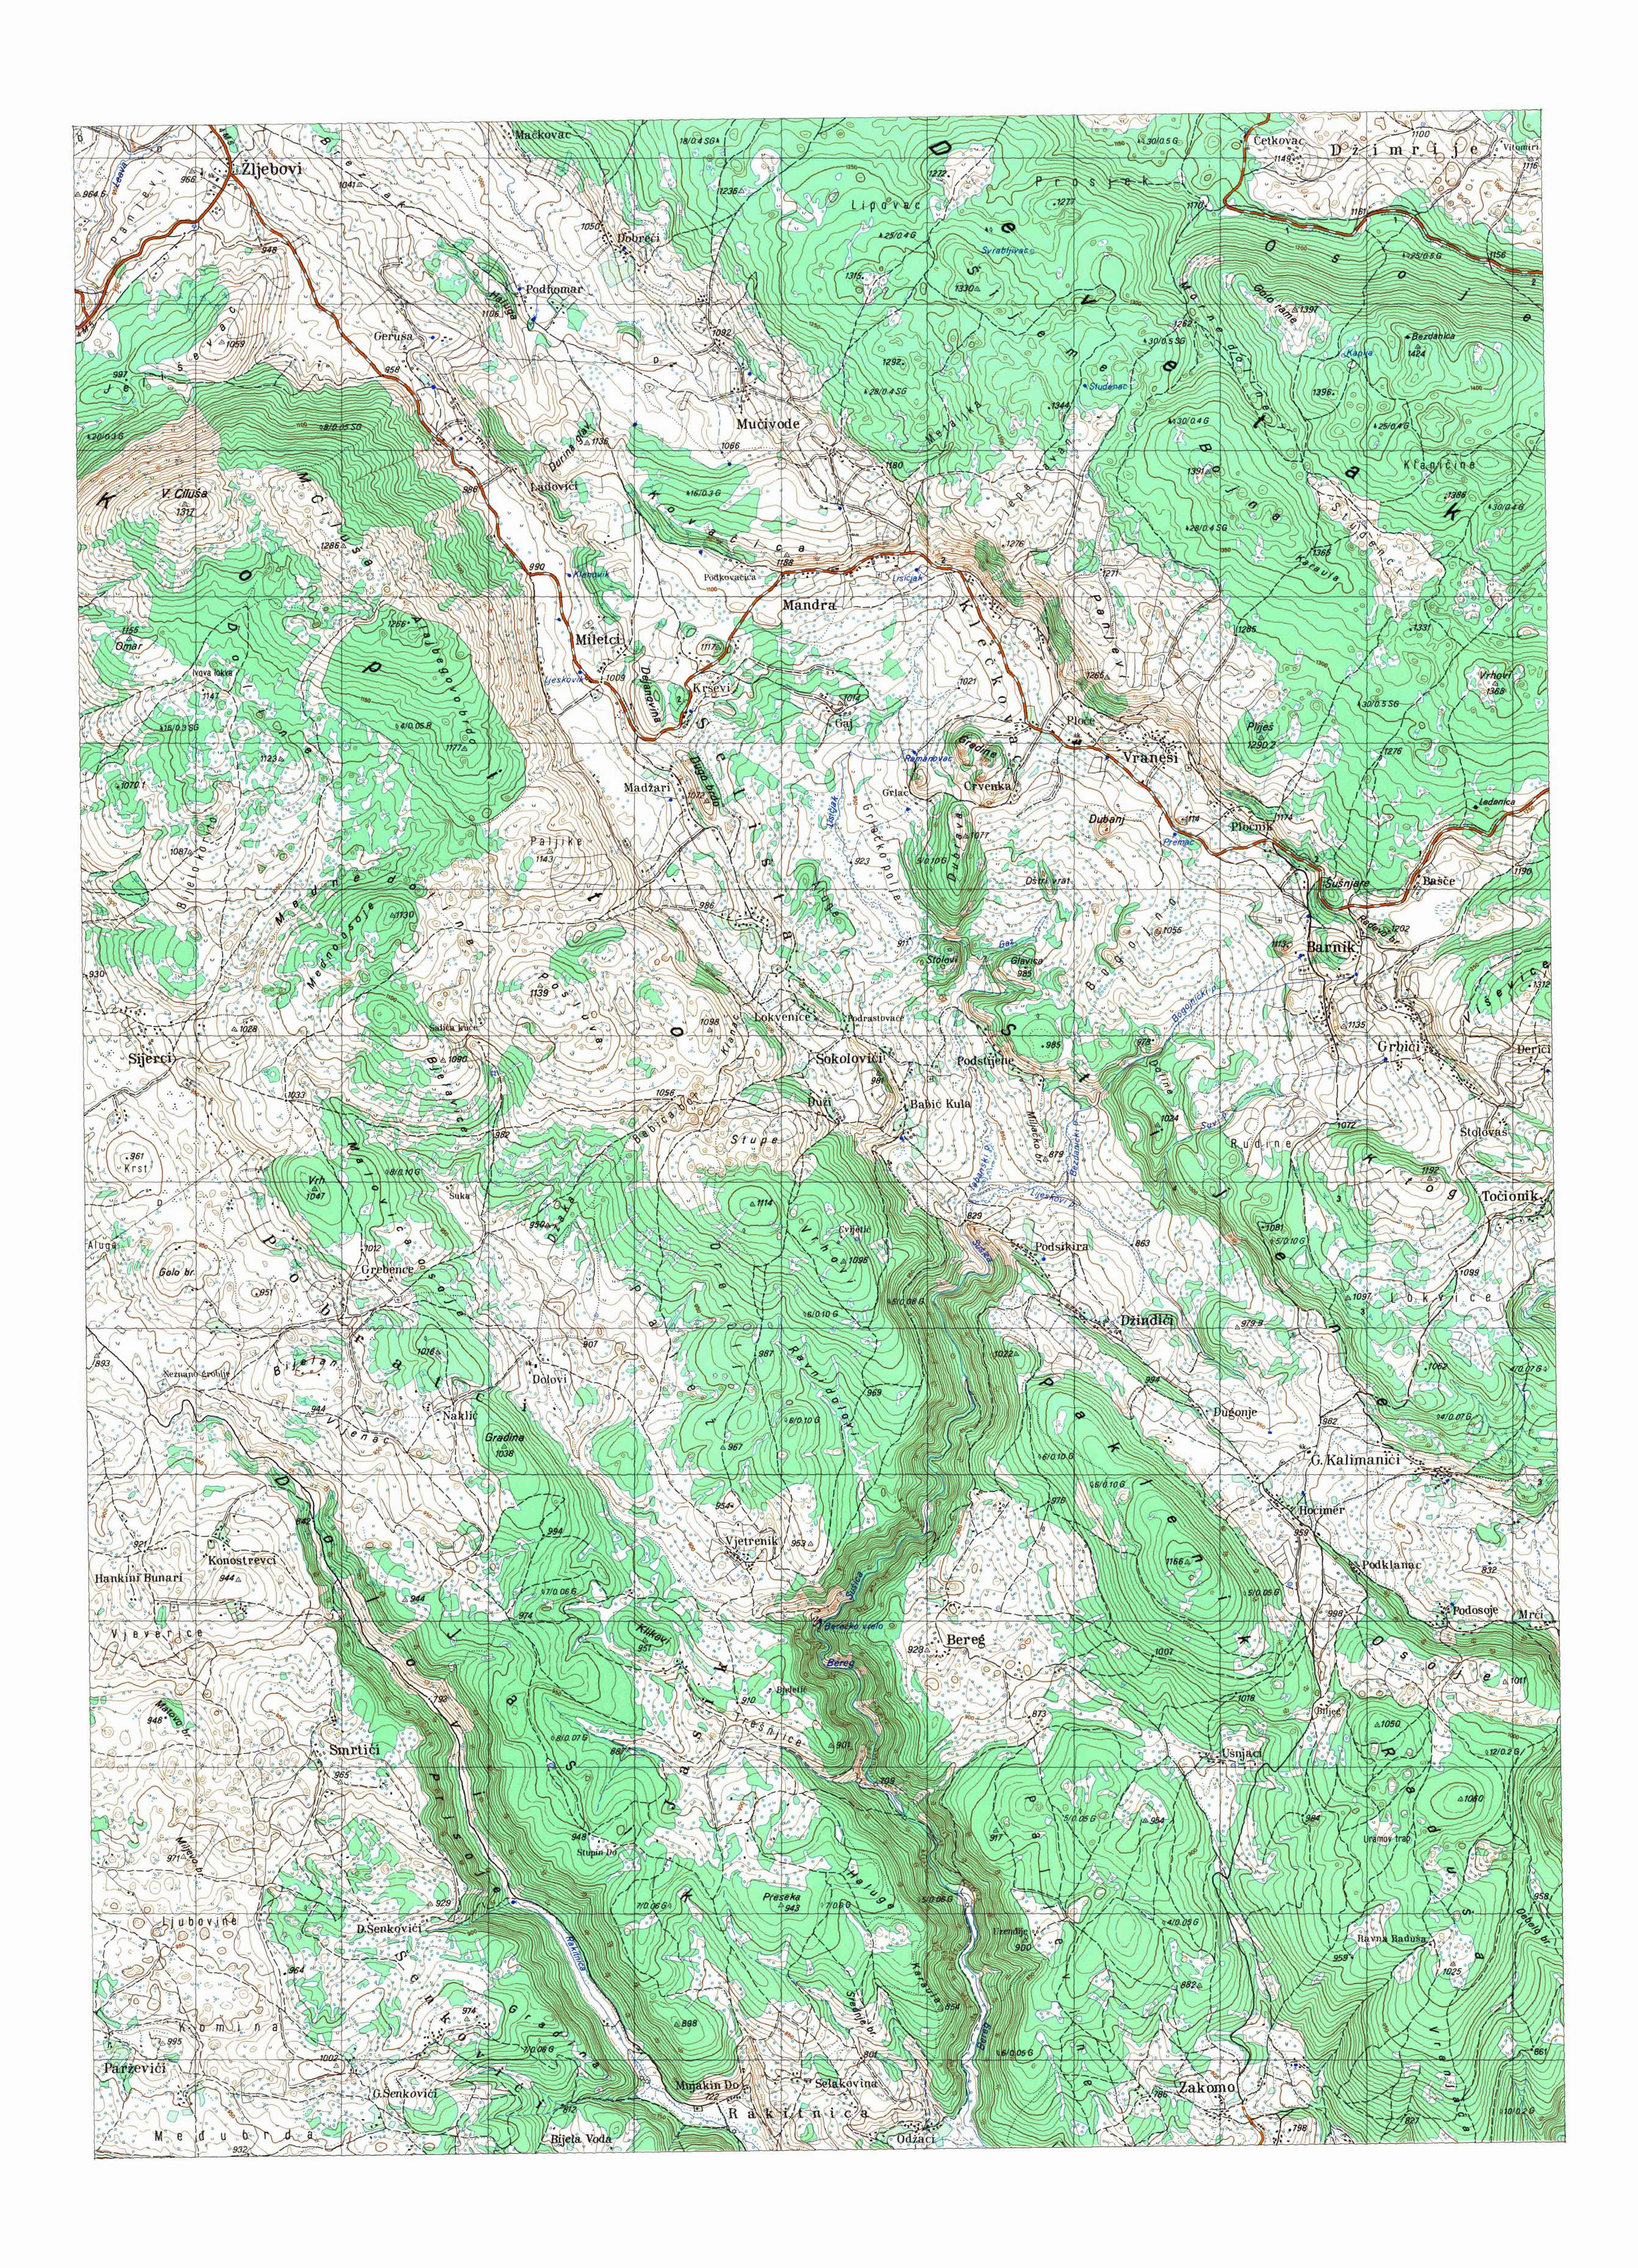  topografska karta BiH 25000 JNA  Goražde